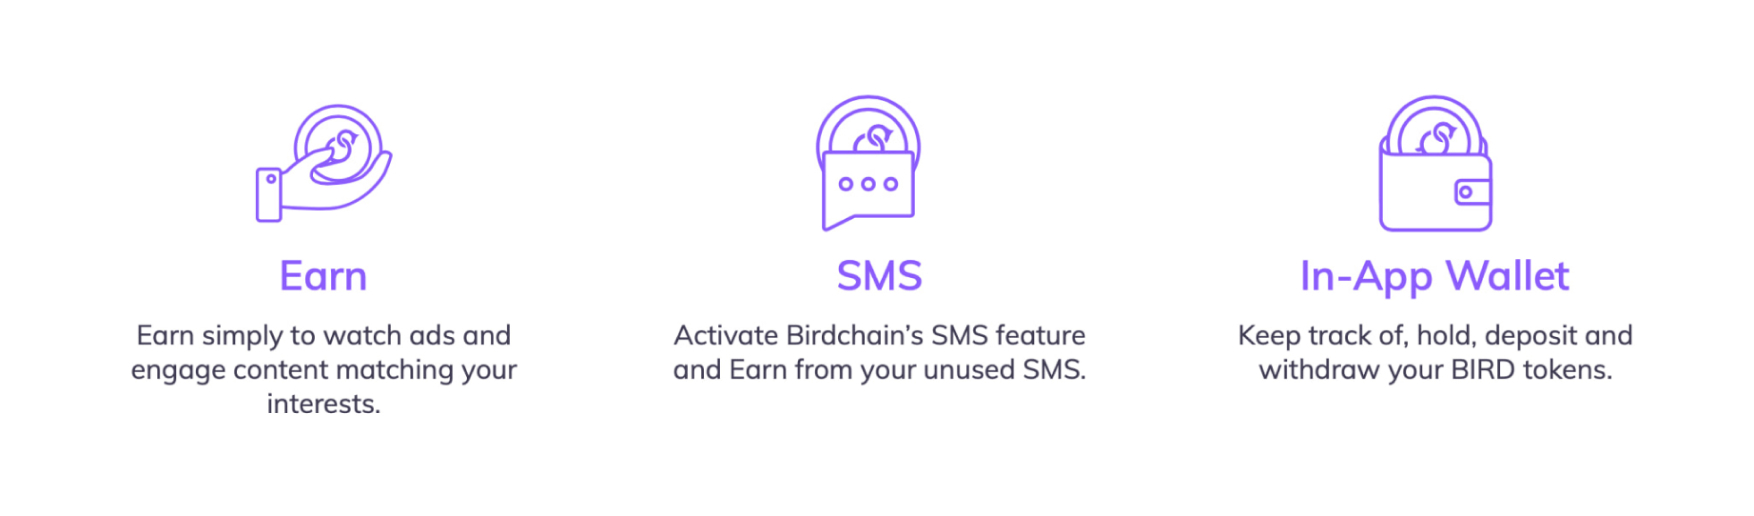 Birdchain app’s features